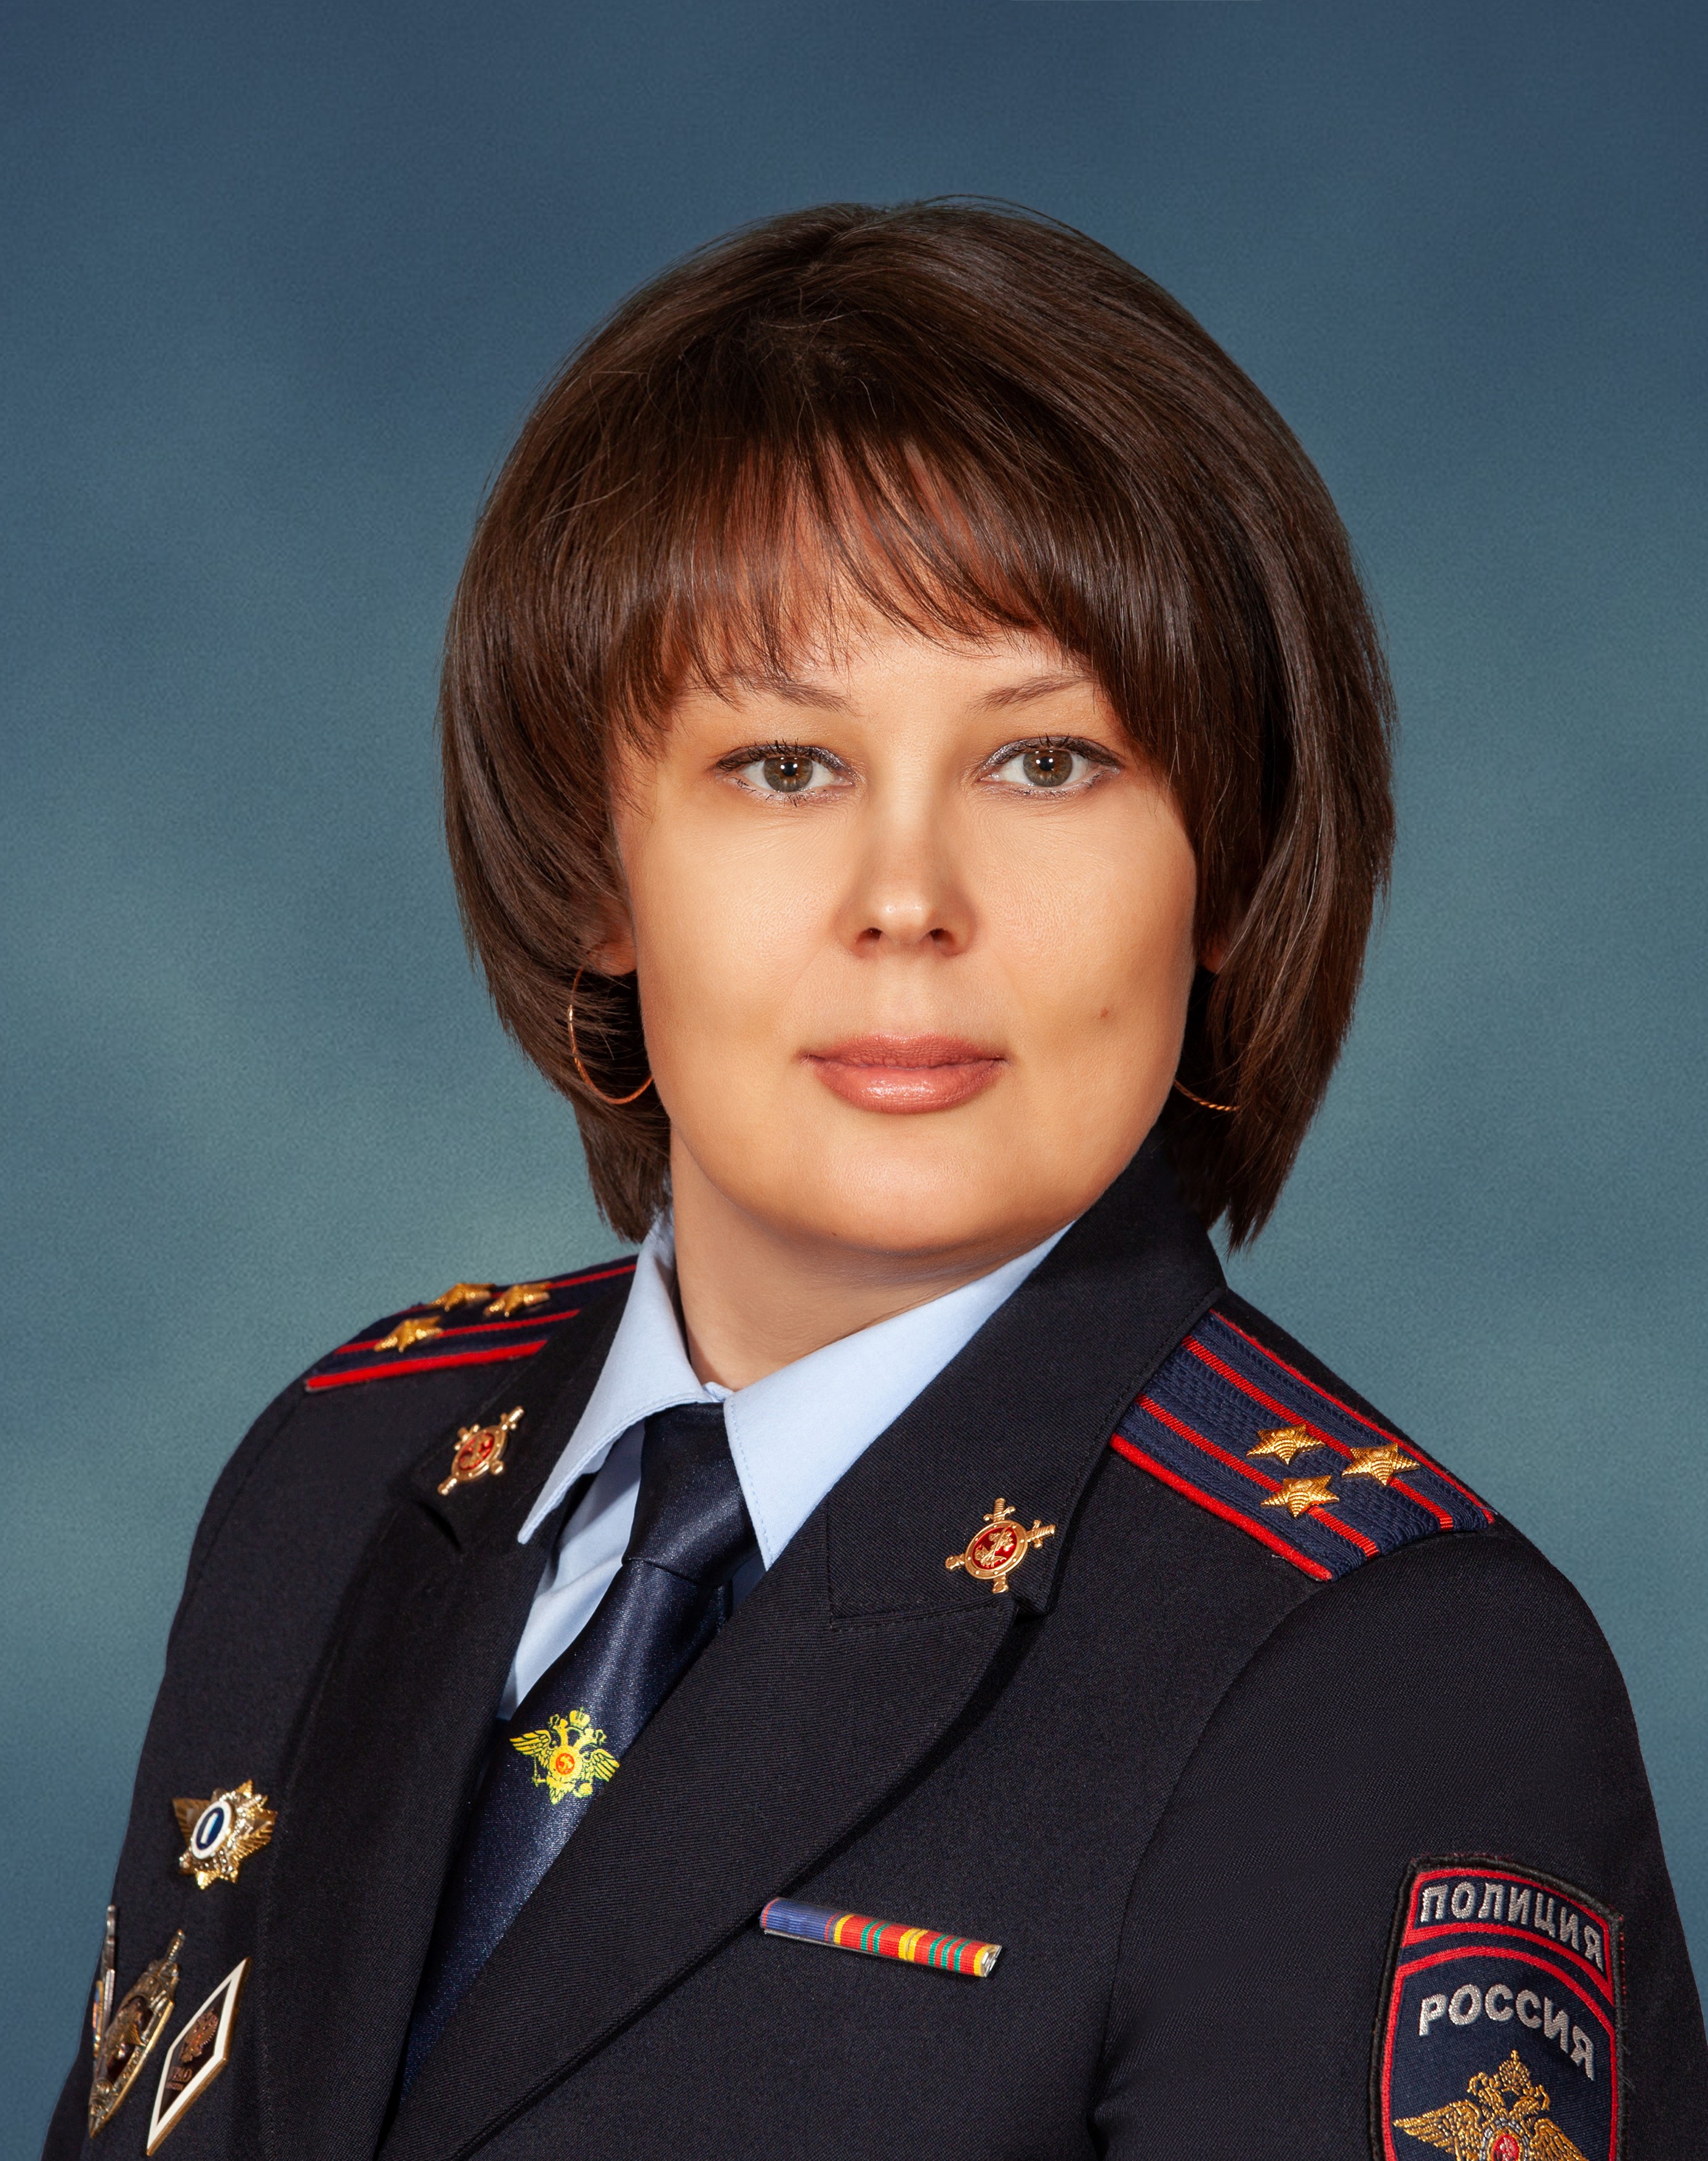 Tatyana V. Maltseva